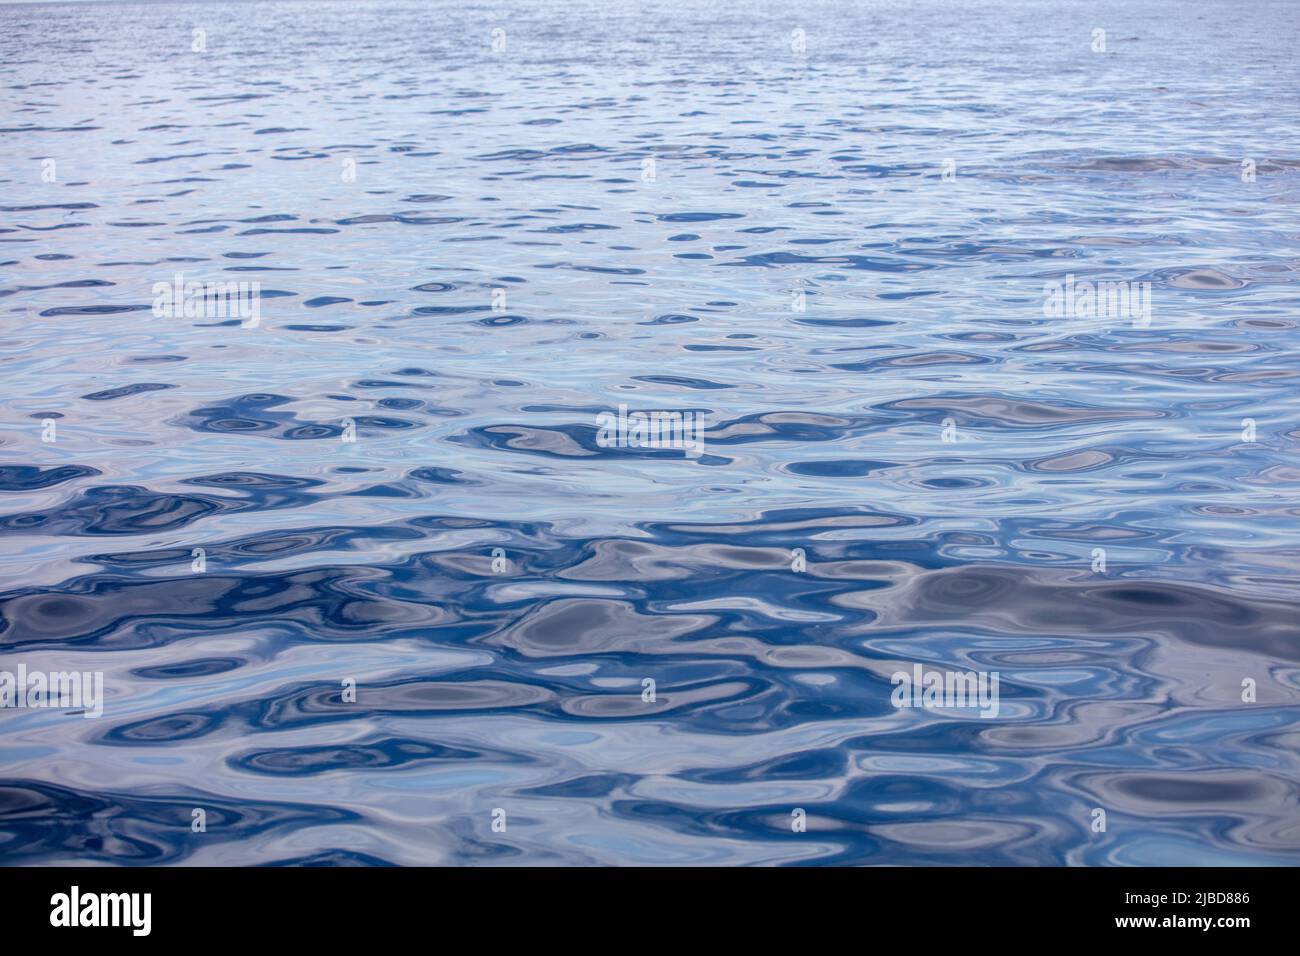 La surface de l'eau de mer est calme avec de petites ondulations. Océan fixe, fond bleu foncé. Mer Egée, Méditerranée Banque D'Images